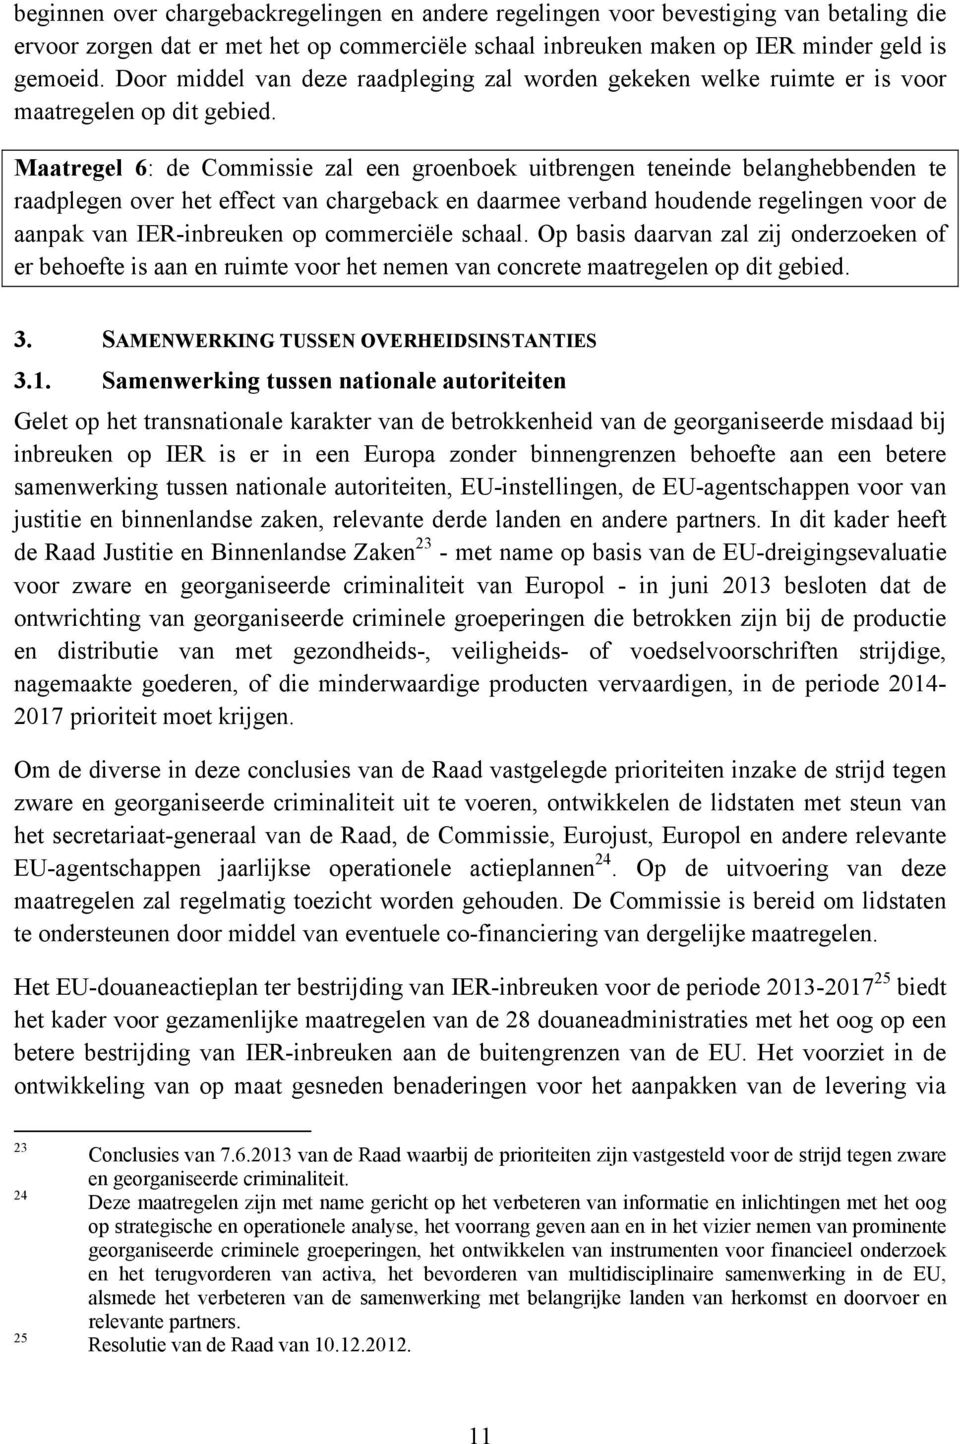 Maatregel 6: de Commissie zal een groenboek uitbrengen teneinde belanghebbenden te raadplegen over het effect van chargeback en daarmee verband houdende regelingen voor de aanpak van IER-inbreuken op